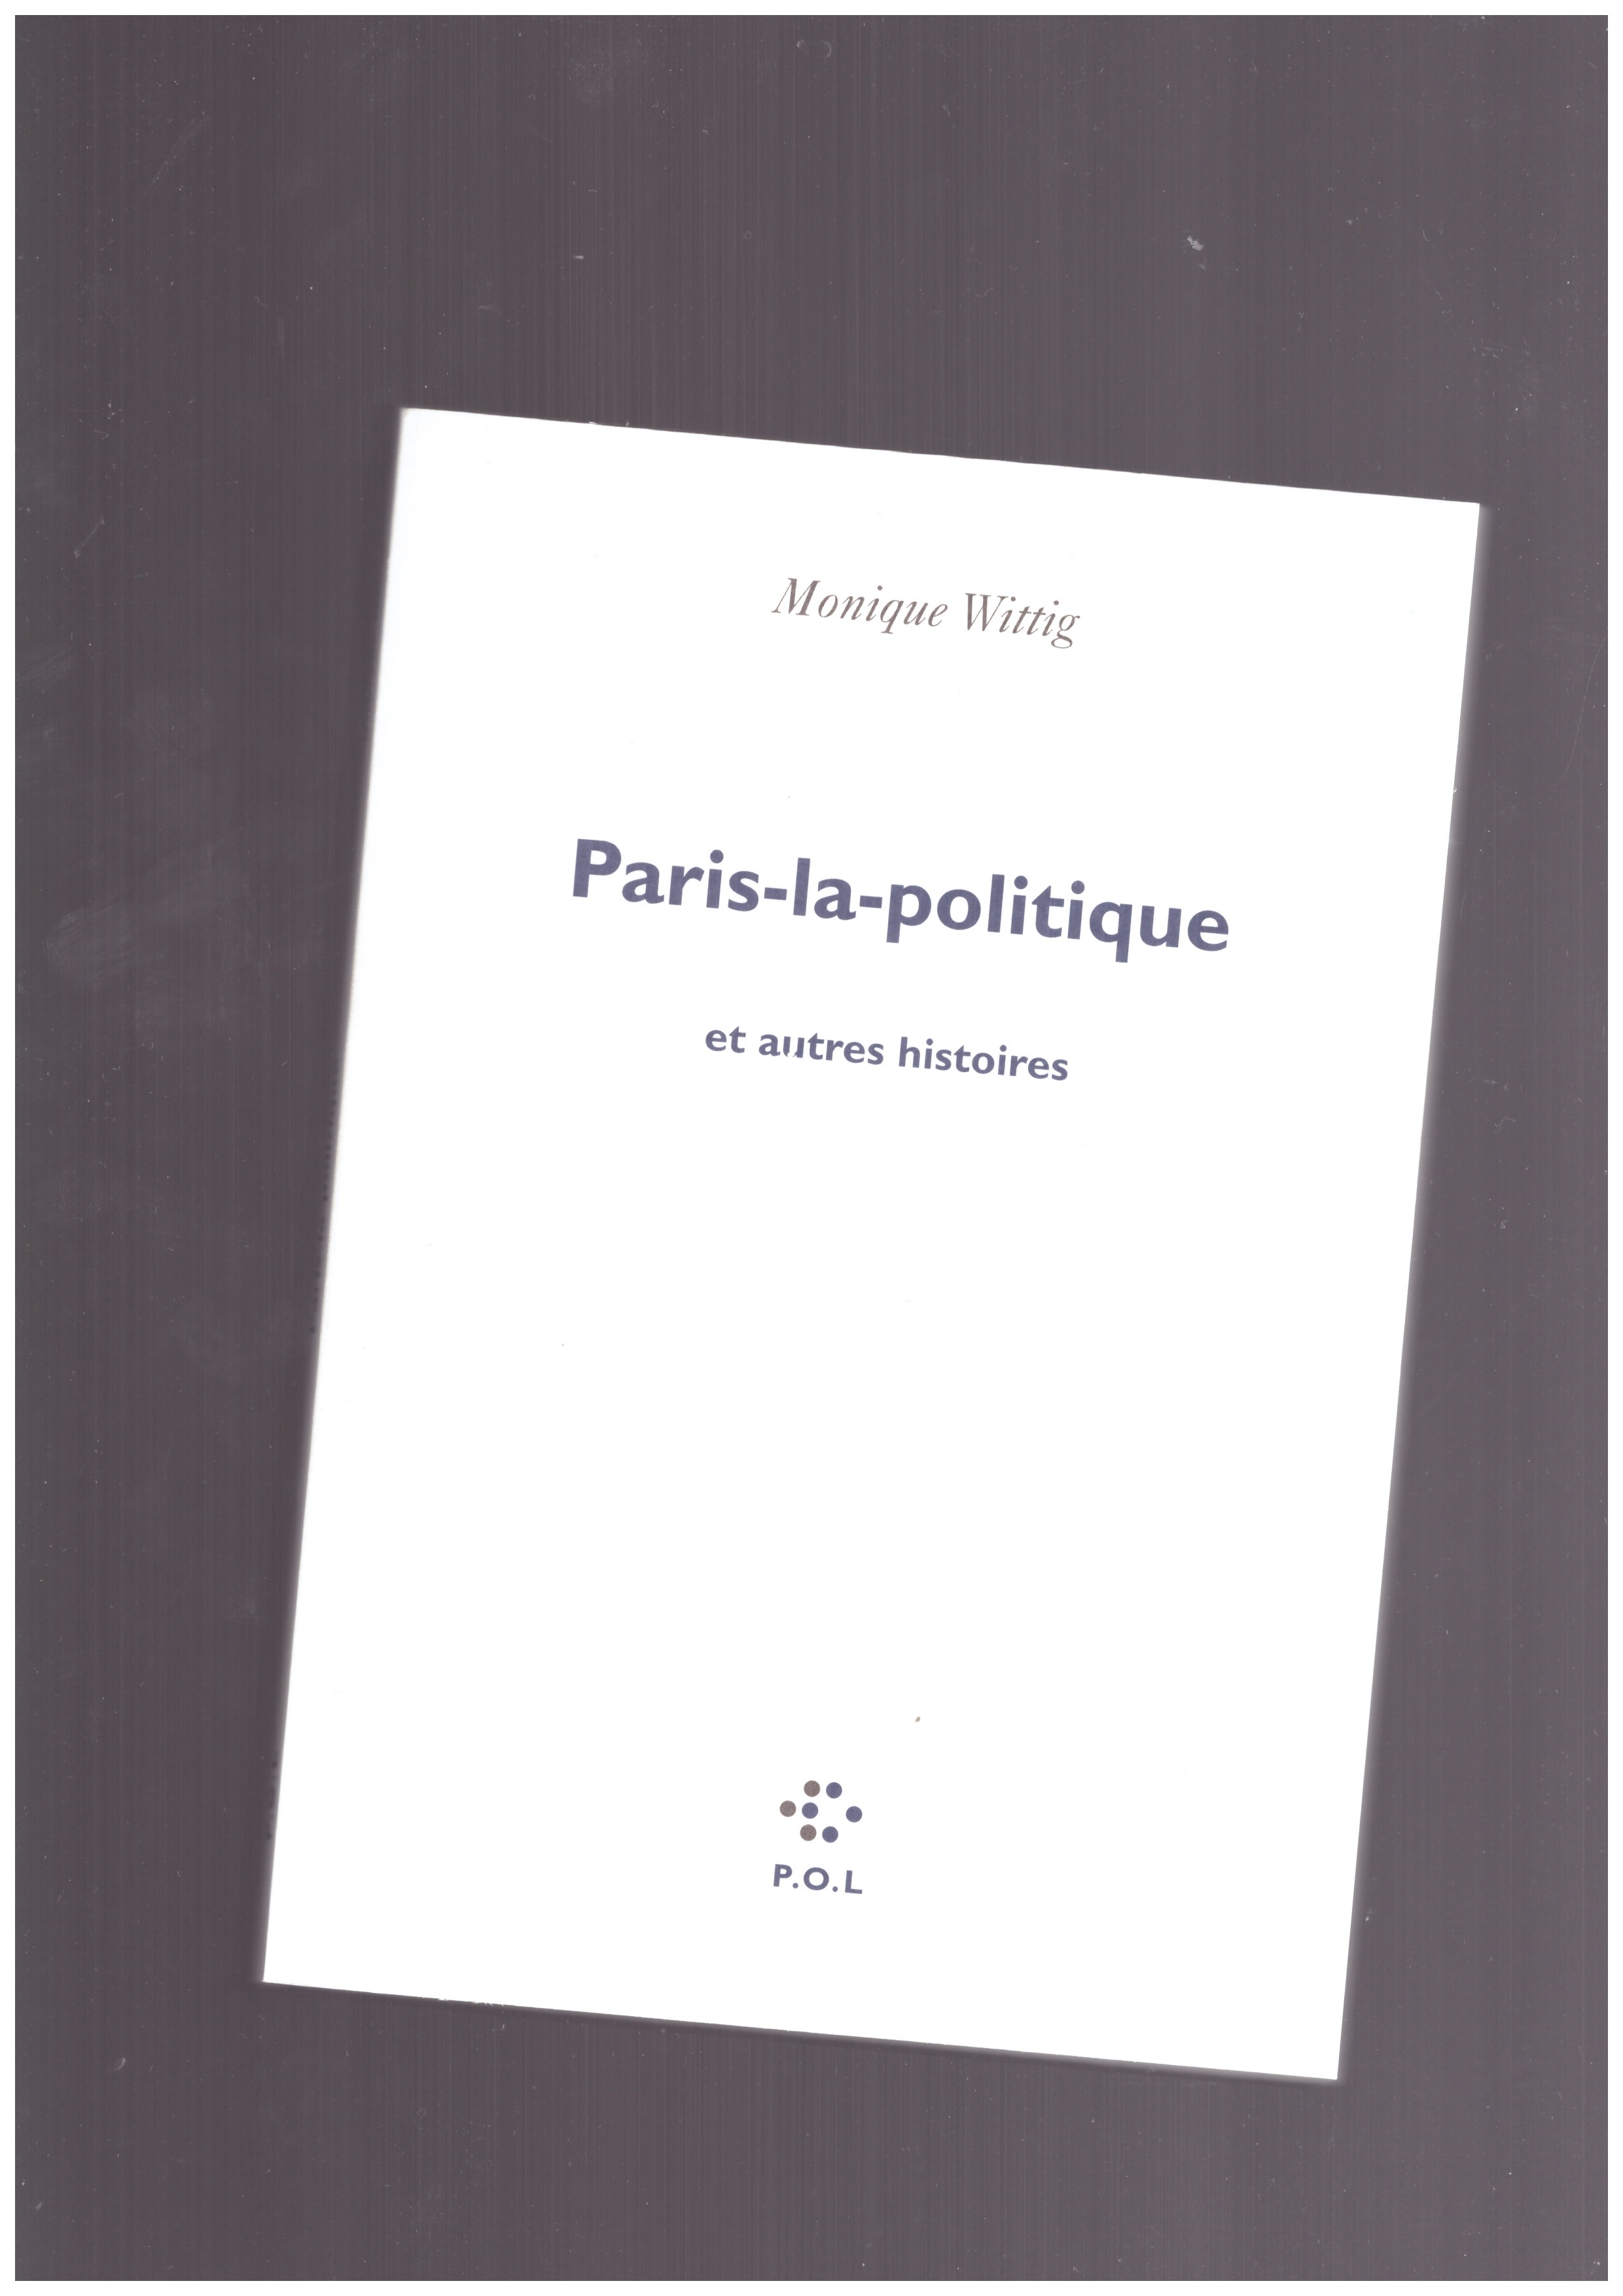 WITTIG, Monique - Paris-la-politique et autres histoires